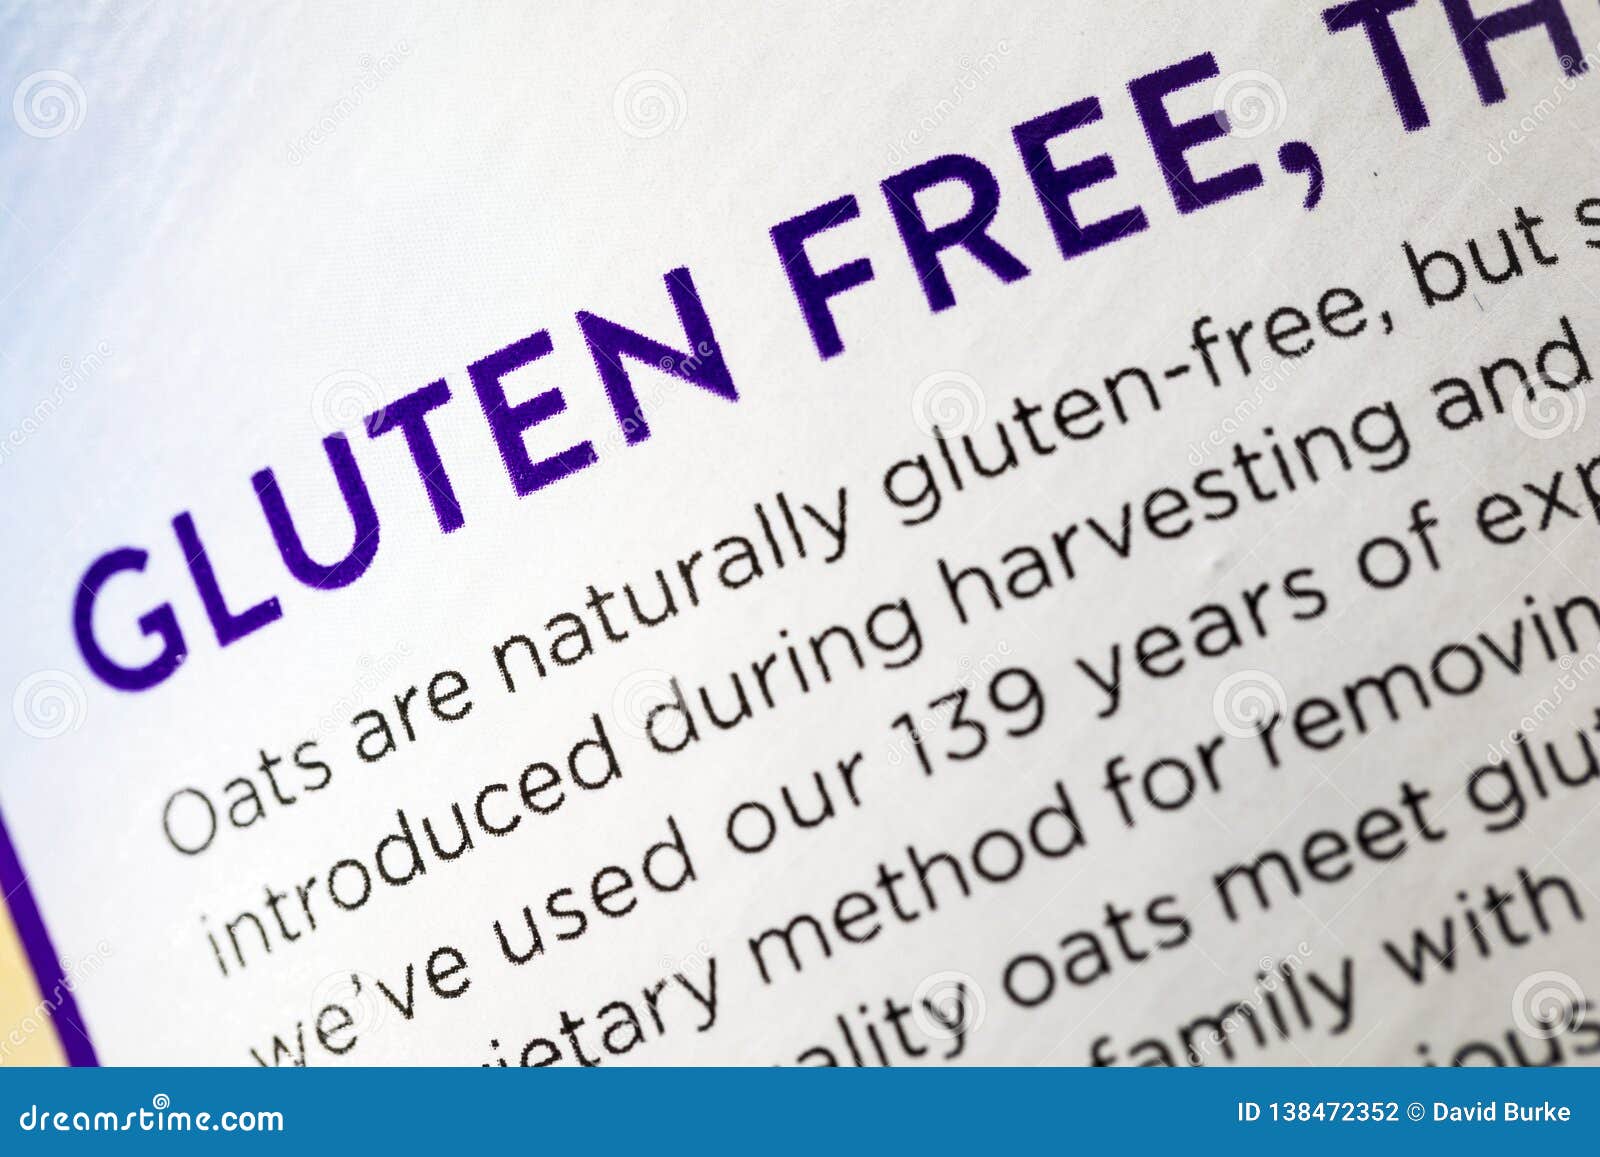 Gluten Free Oats Grain Food Label Diet Celiac Disease ...